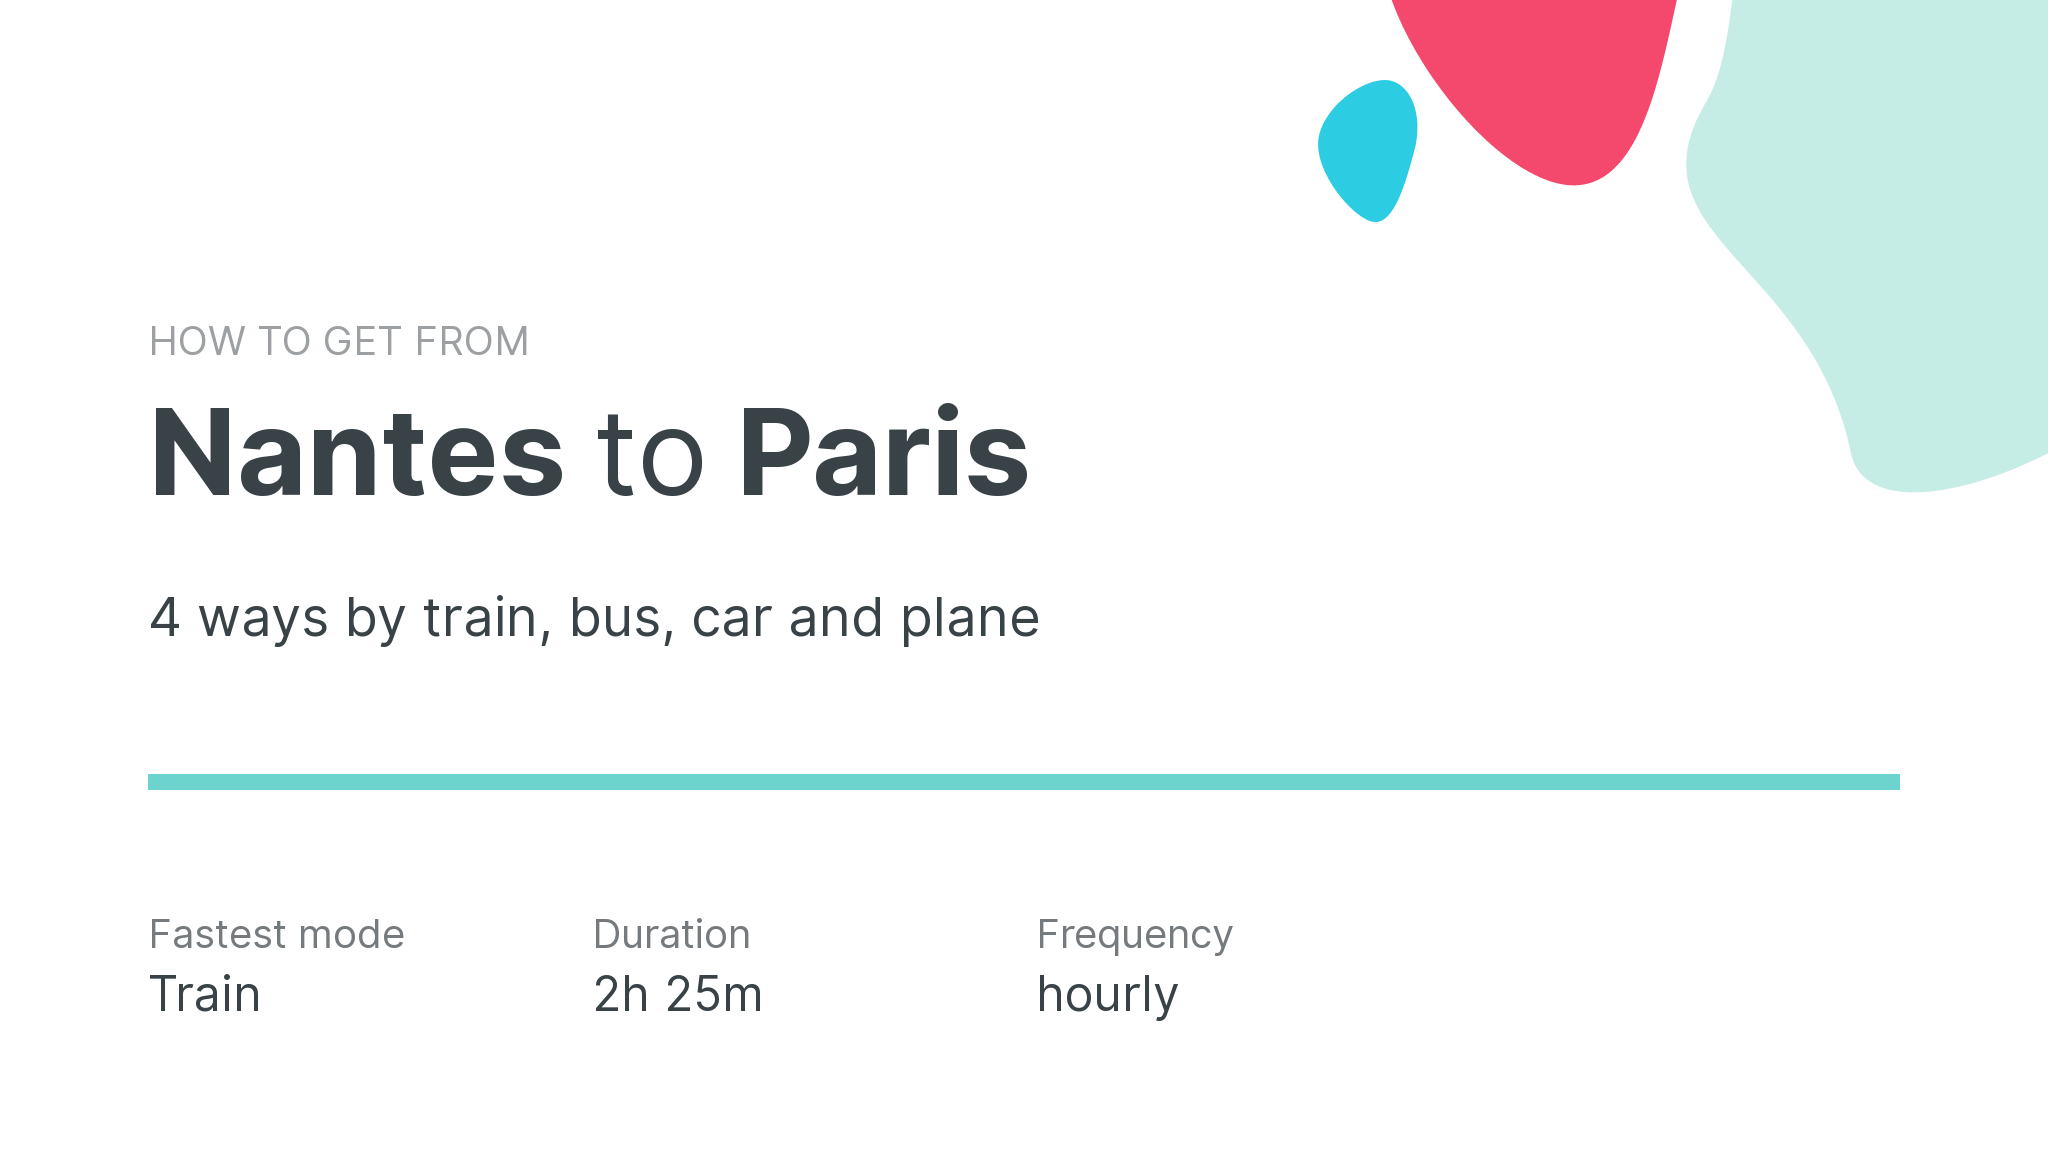 How do I get from Nantes to Paris